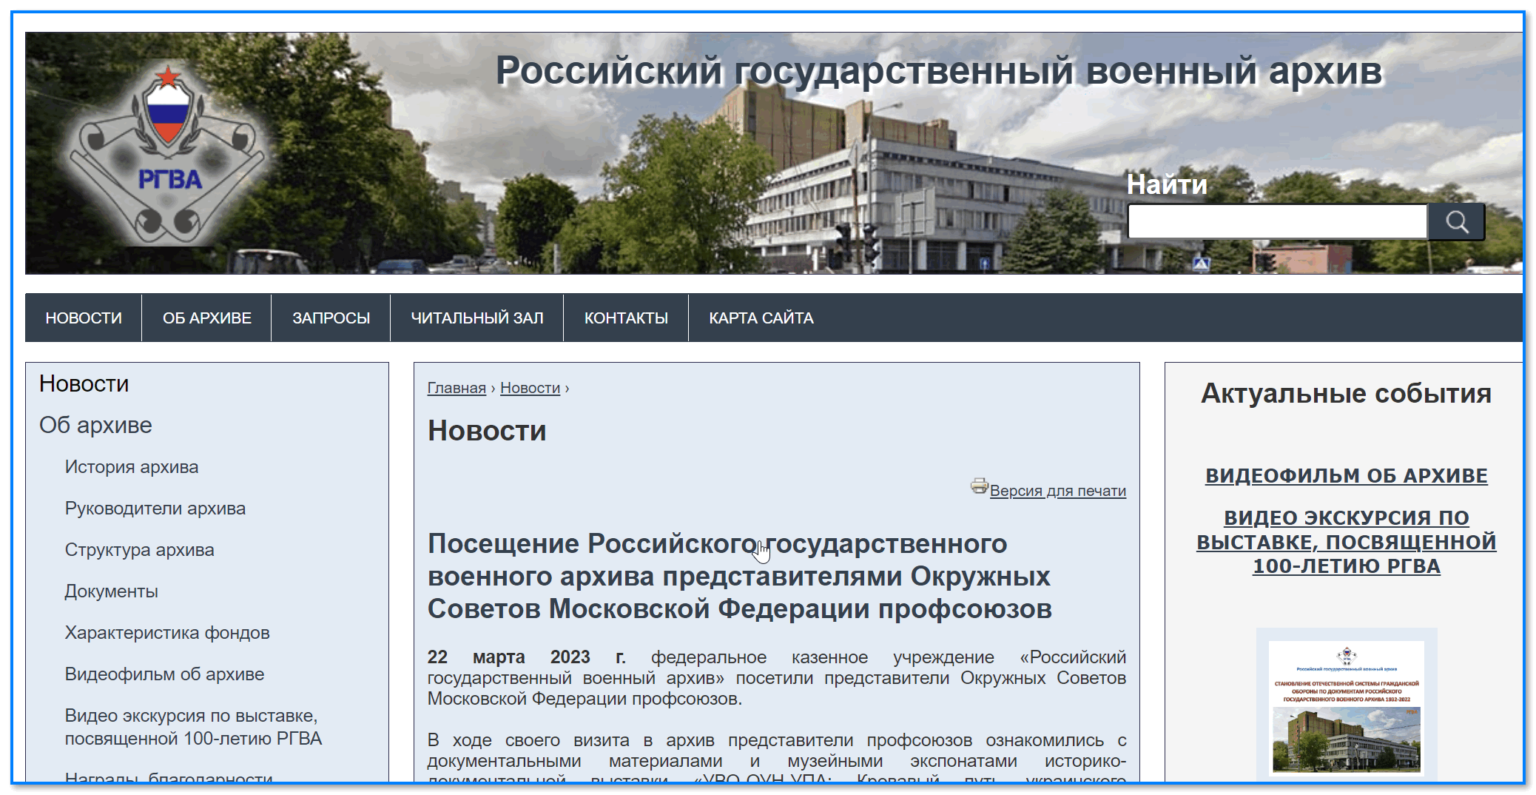 Скрин с сайта rgvarchive.ru